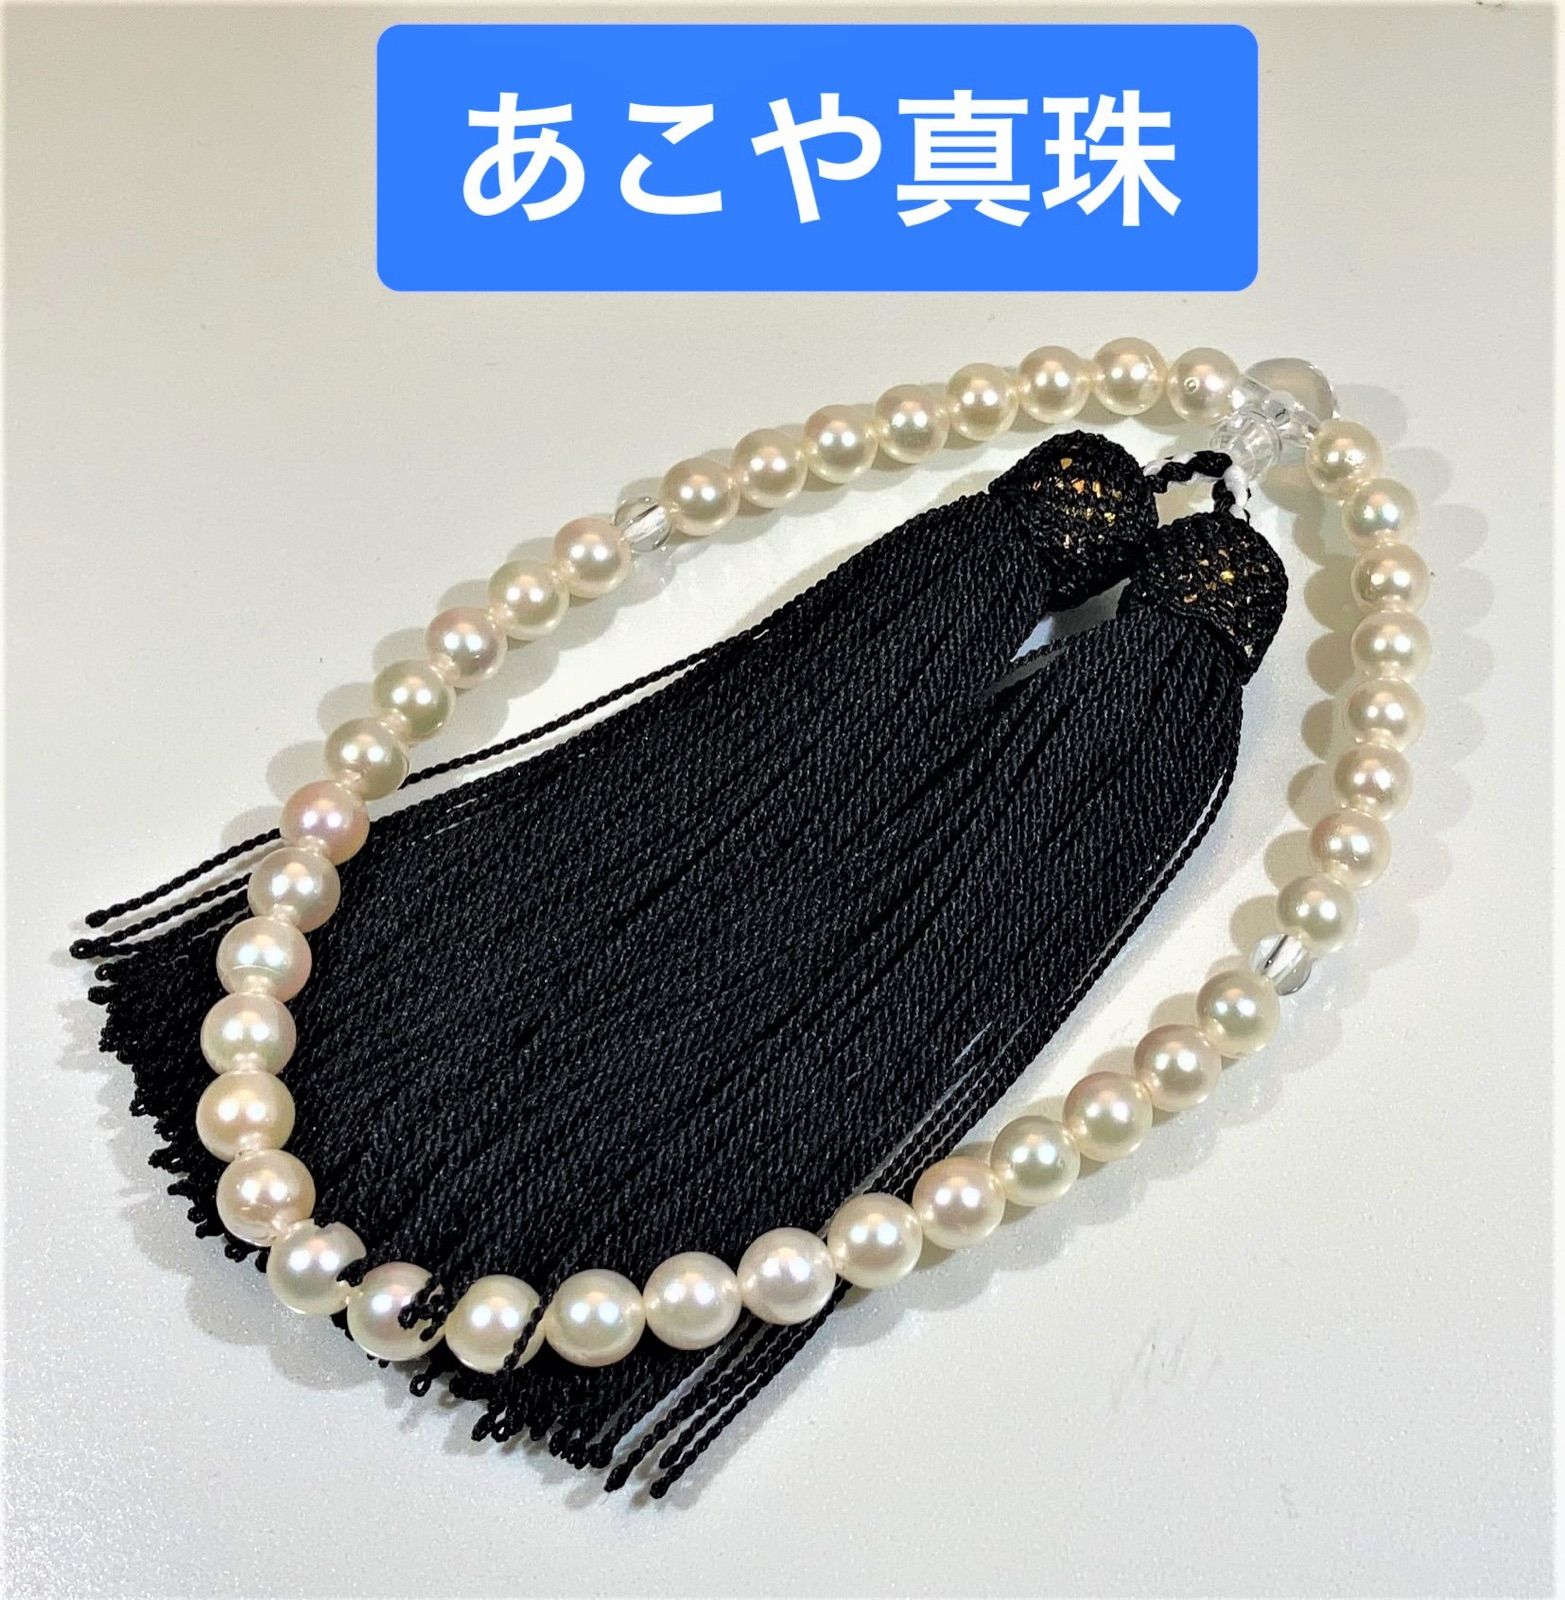 あこや真珠 念珠 数珠 全宗派使用可能 保証&手引き付き 色テリ良好 